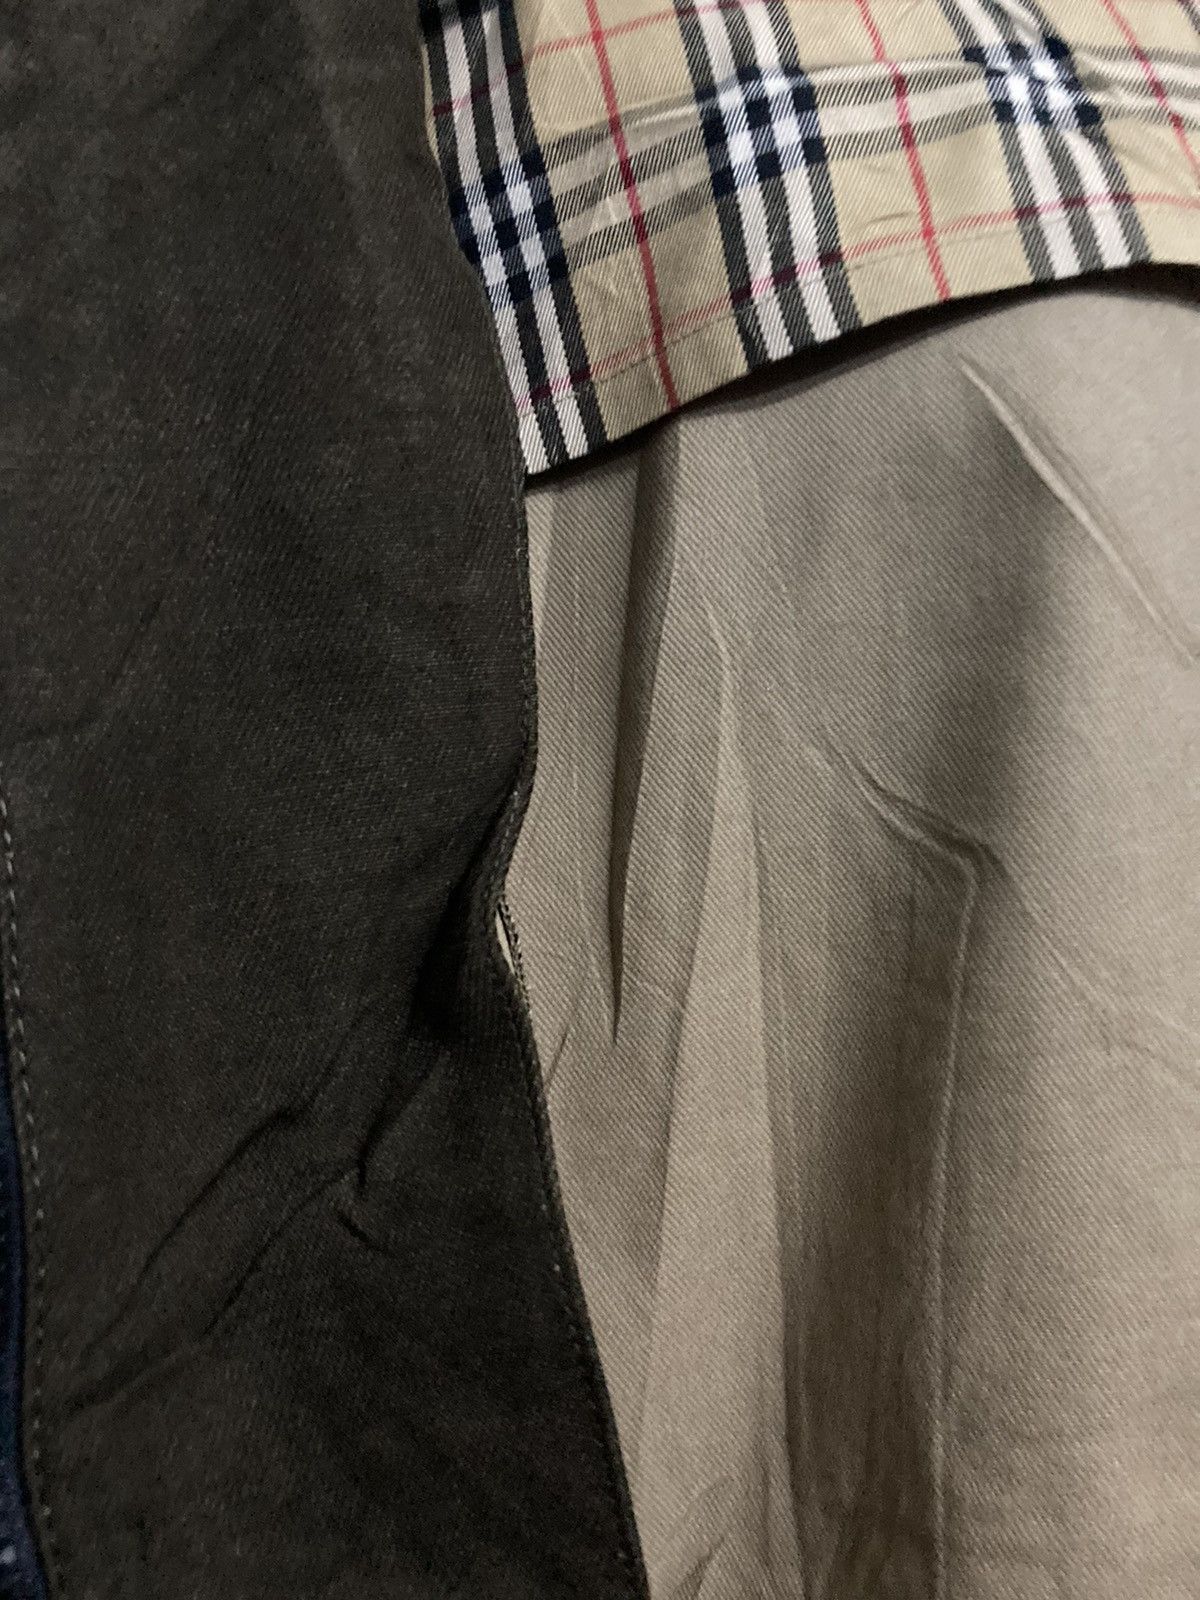 Burberrys Blue Label Hooded Jacket in Size 38 - 15